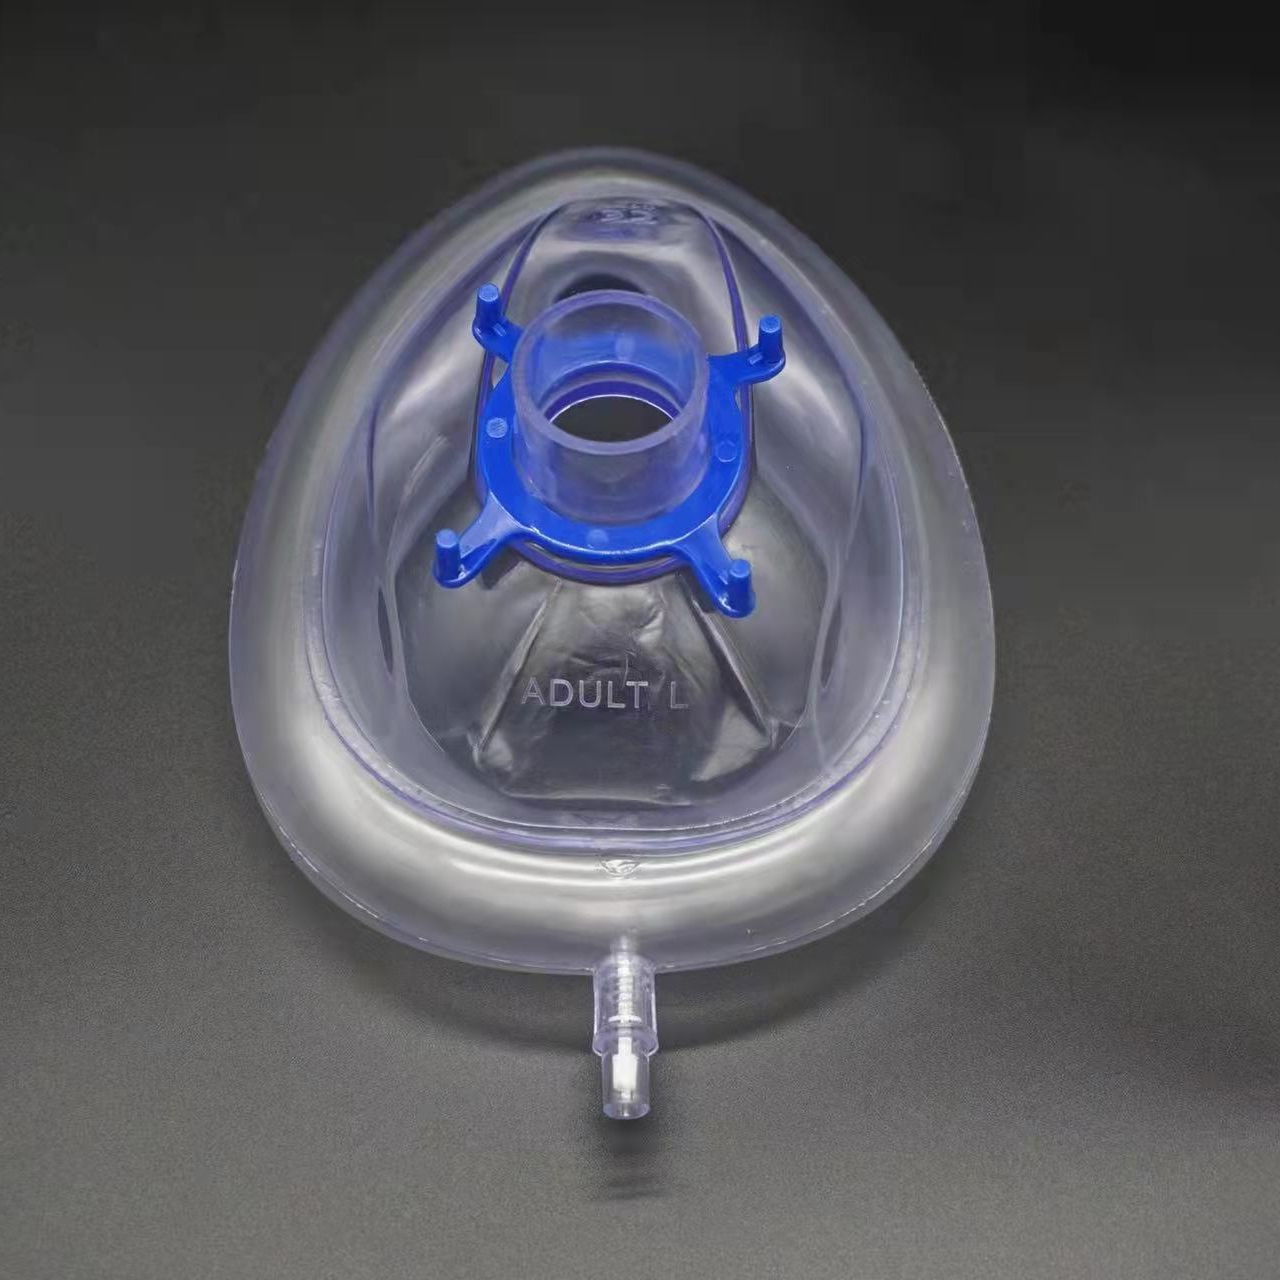 Maschera d'anestesia di cunfortu di lusso in PVC di qualità medica 100 per centu senza lattice Maschera d'anestesia di cuscini d'aria senza lattice